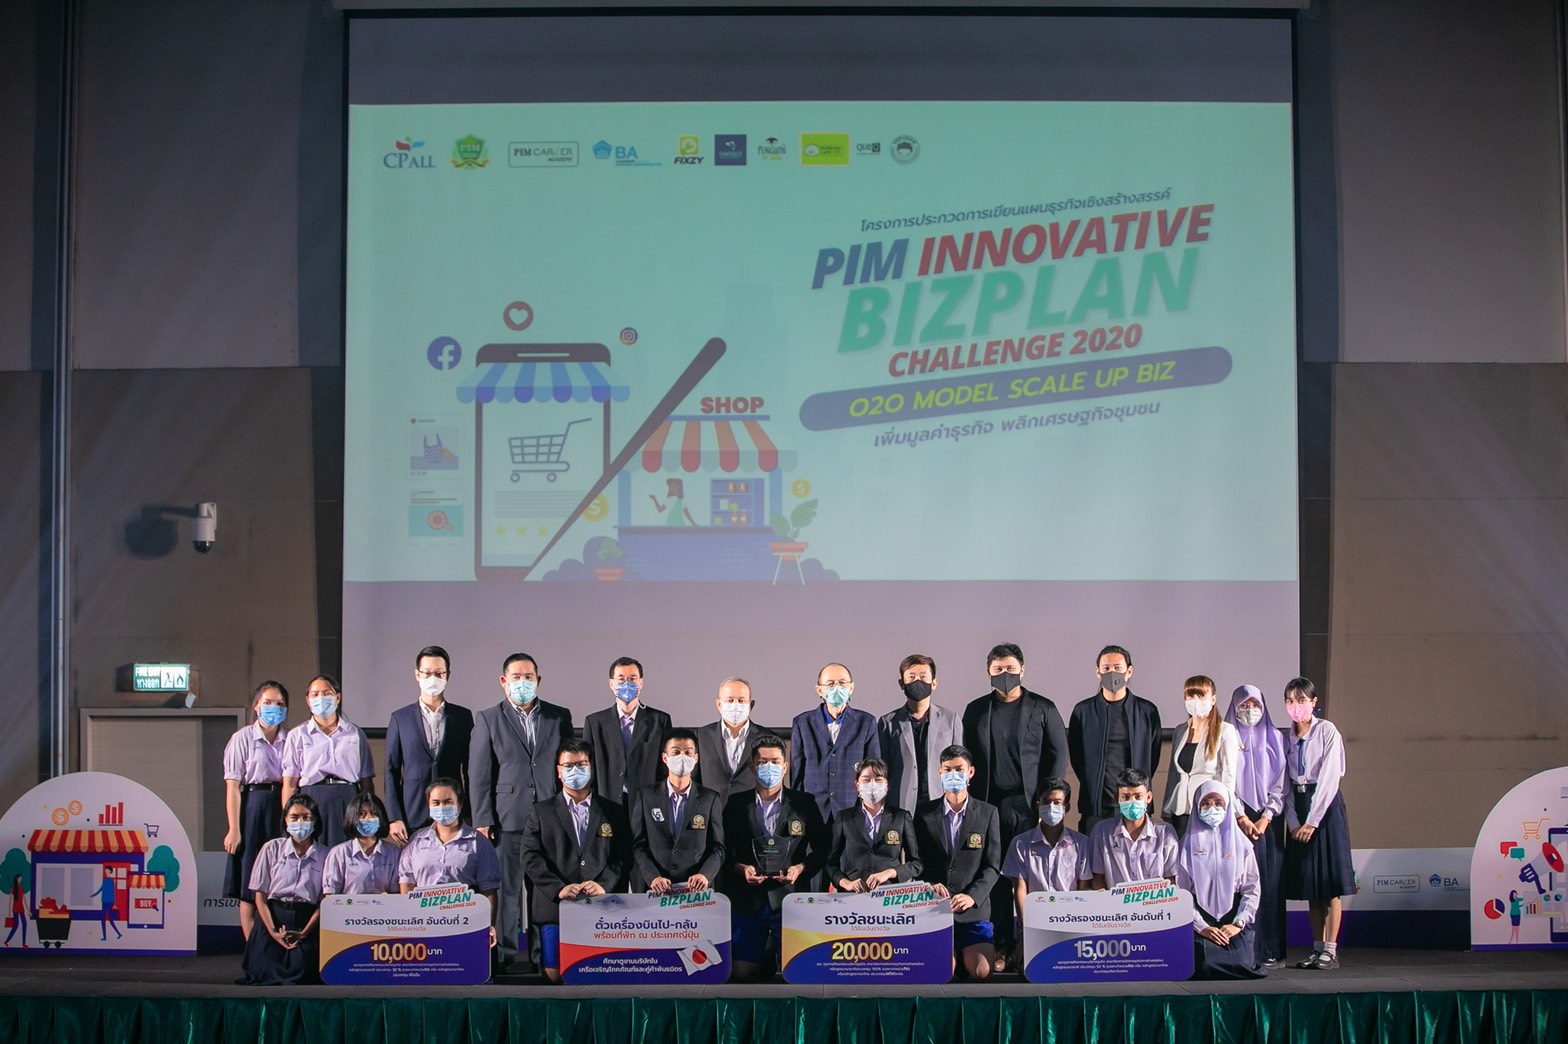 สุดยอดนักธุรกิจวัยทีน เผยไอเดียแผนธุรกิจสร้างสรรค์ พิชิตรางวัลเวที PIM Innovative Biz Plan Challenge 2020